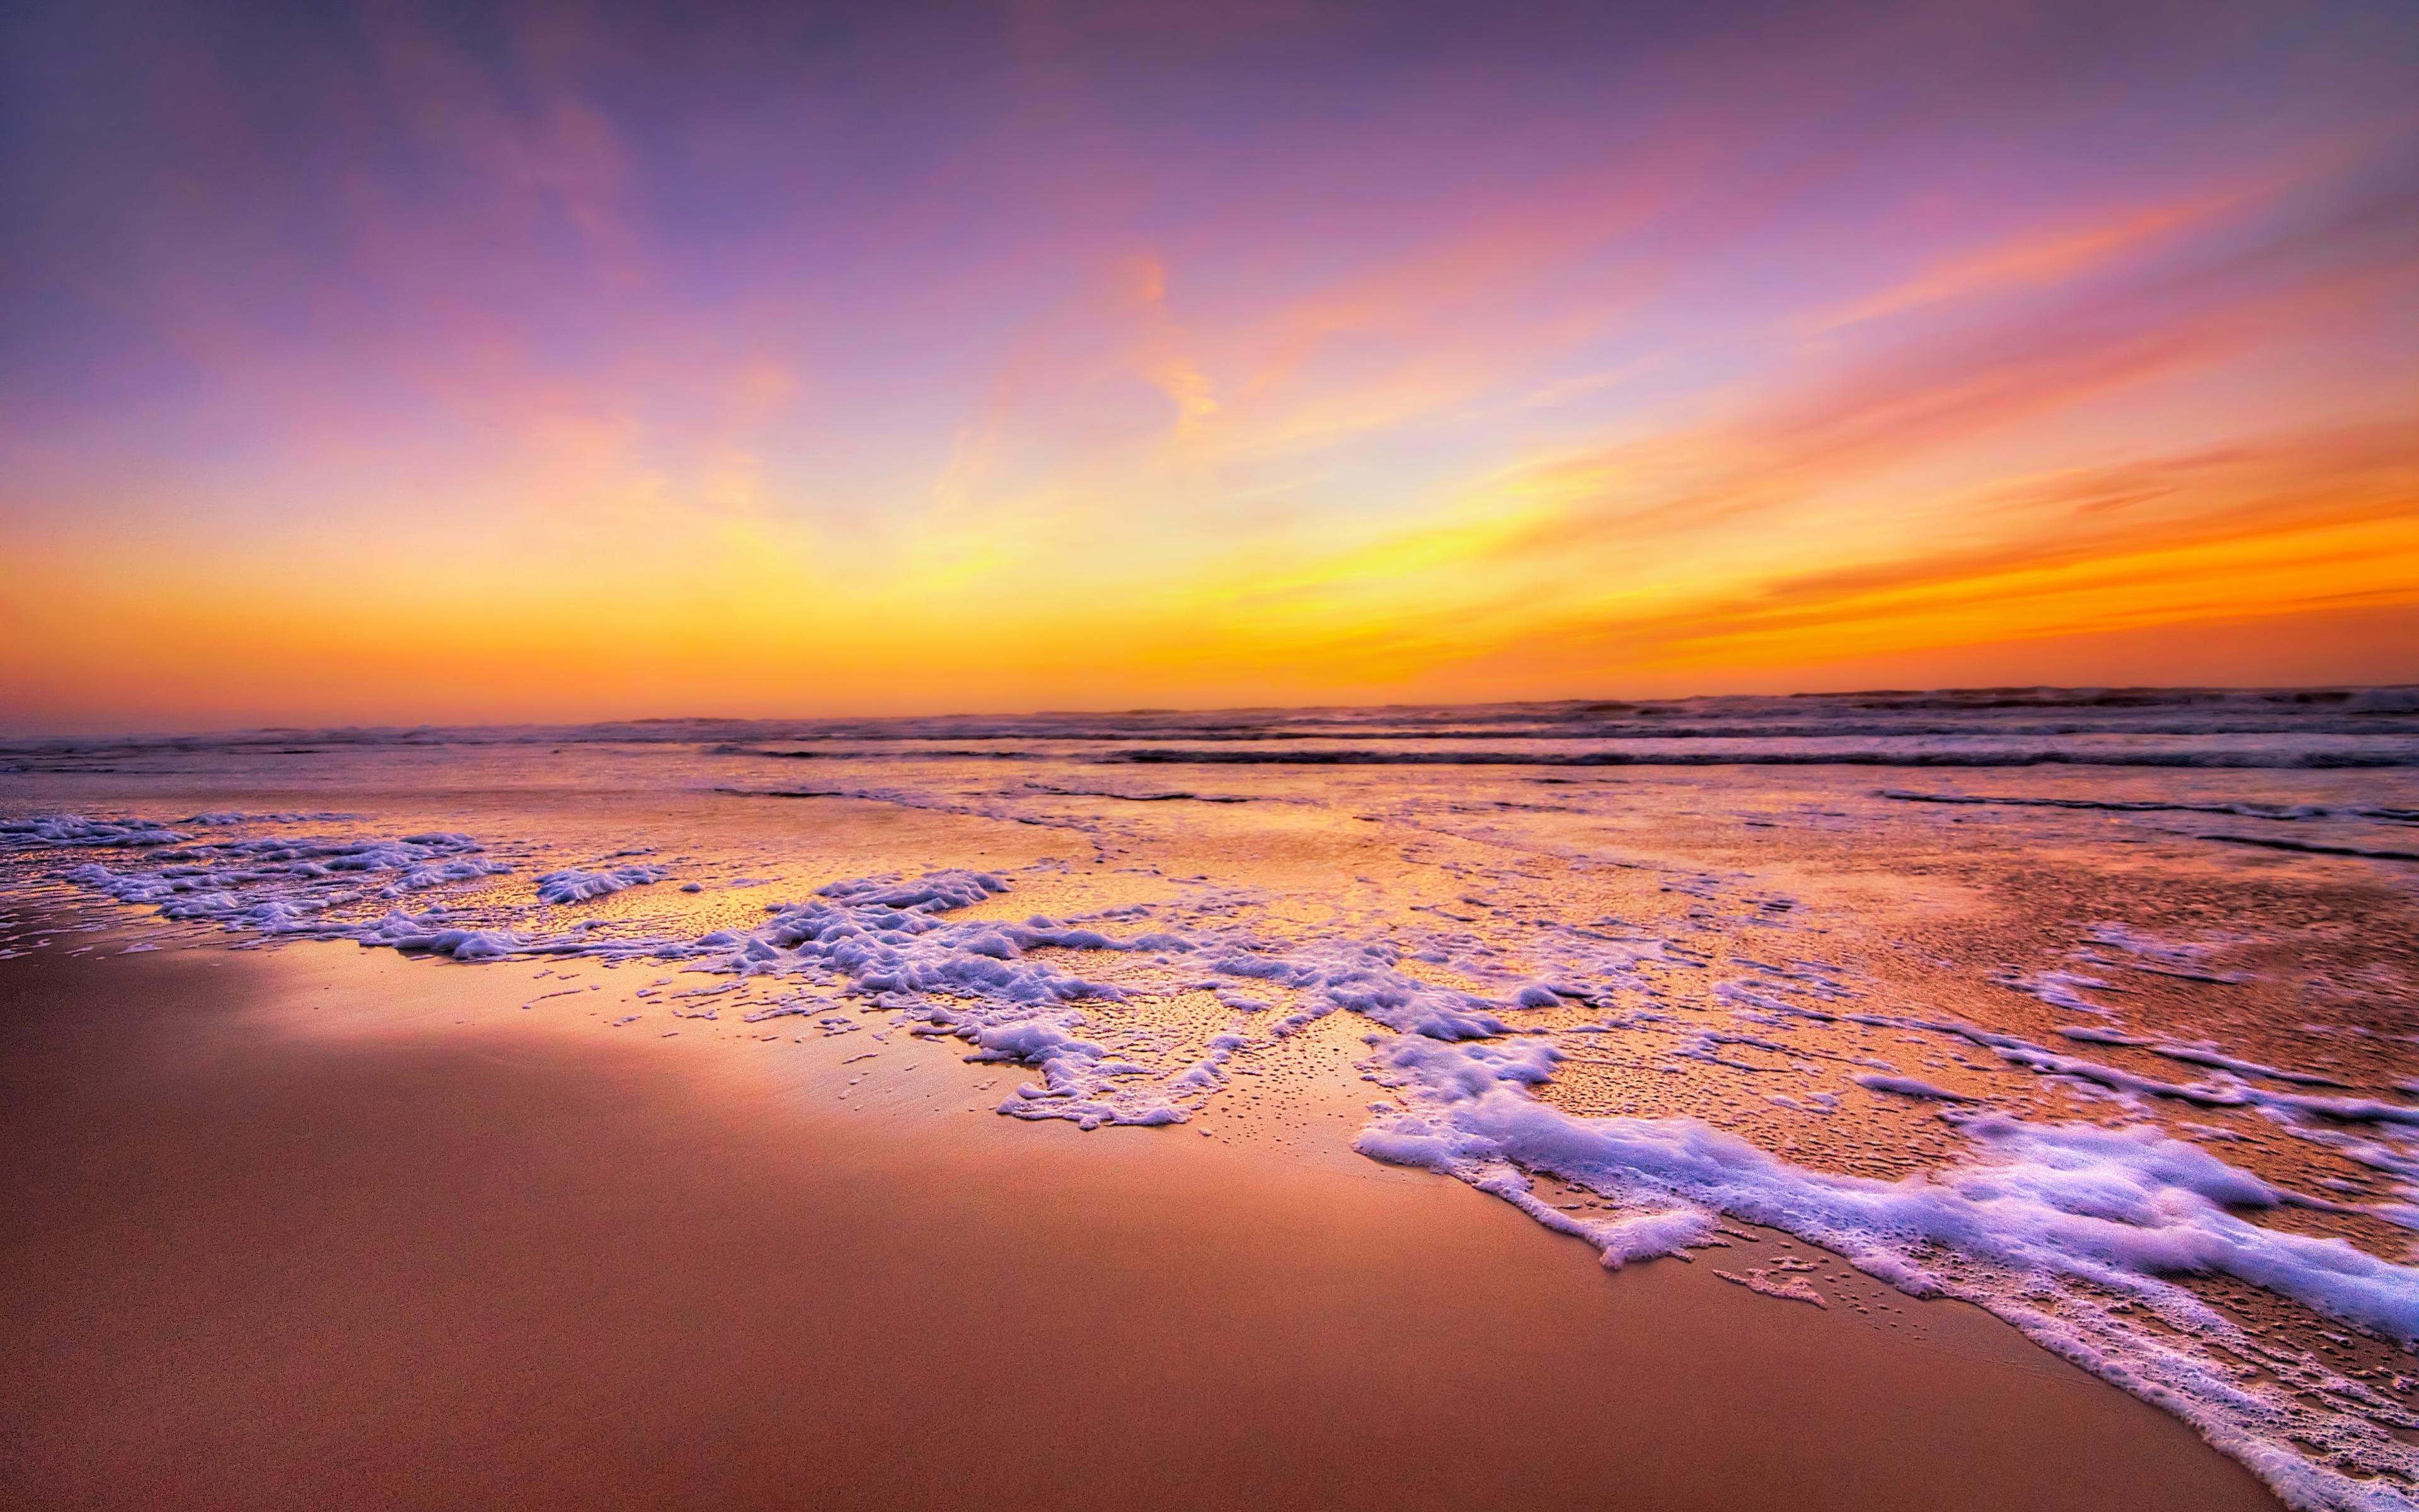 Golden Sunset, California Beach widescreen wallpaper. Wide